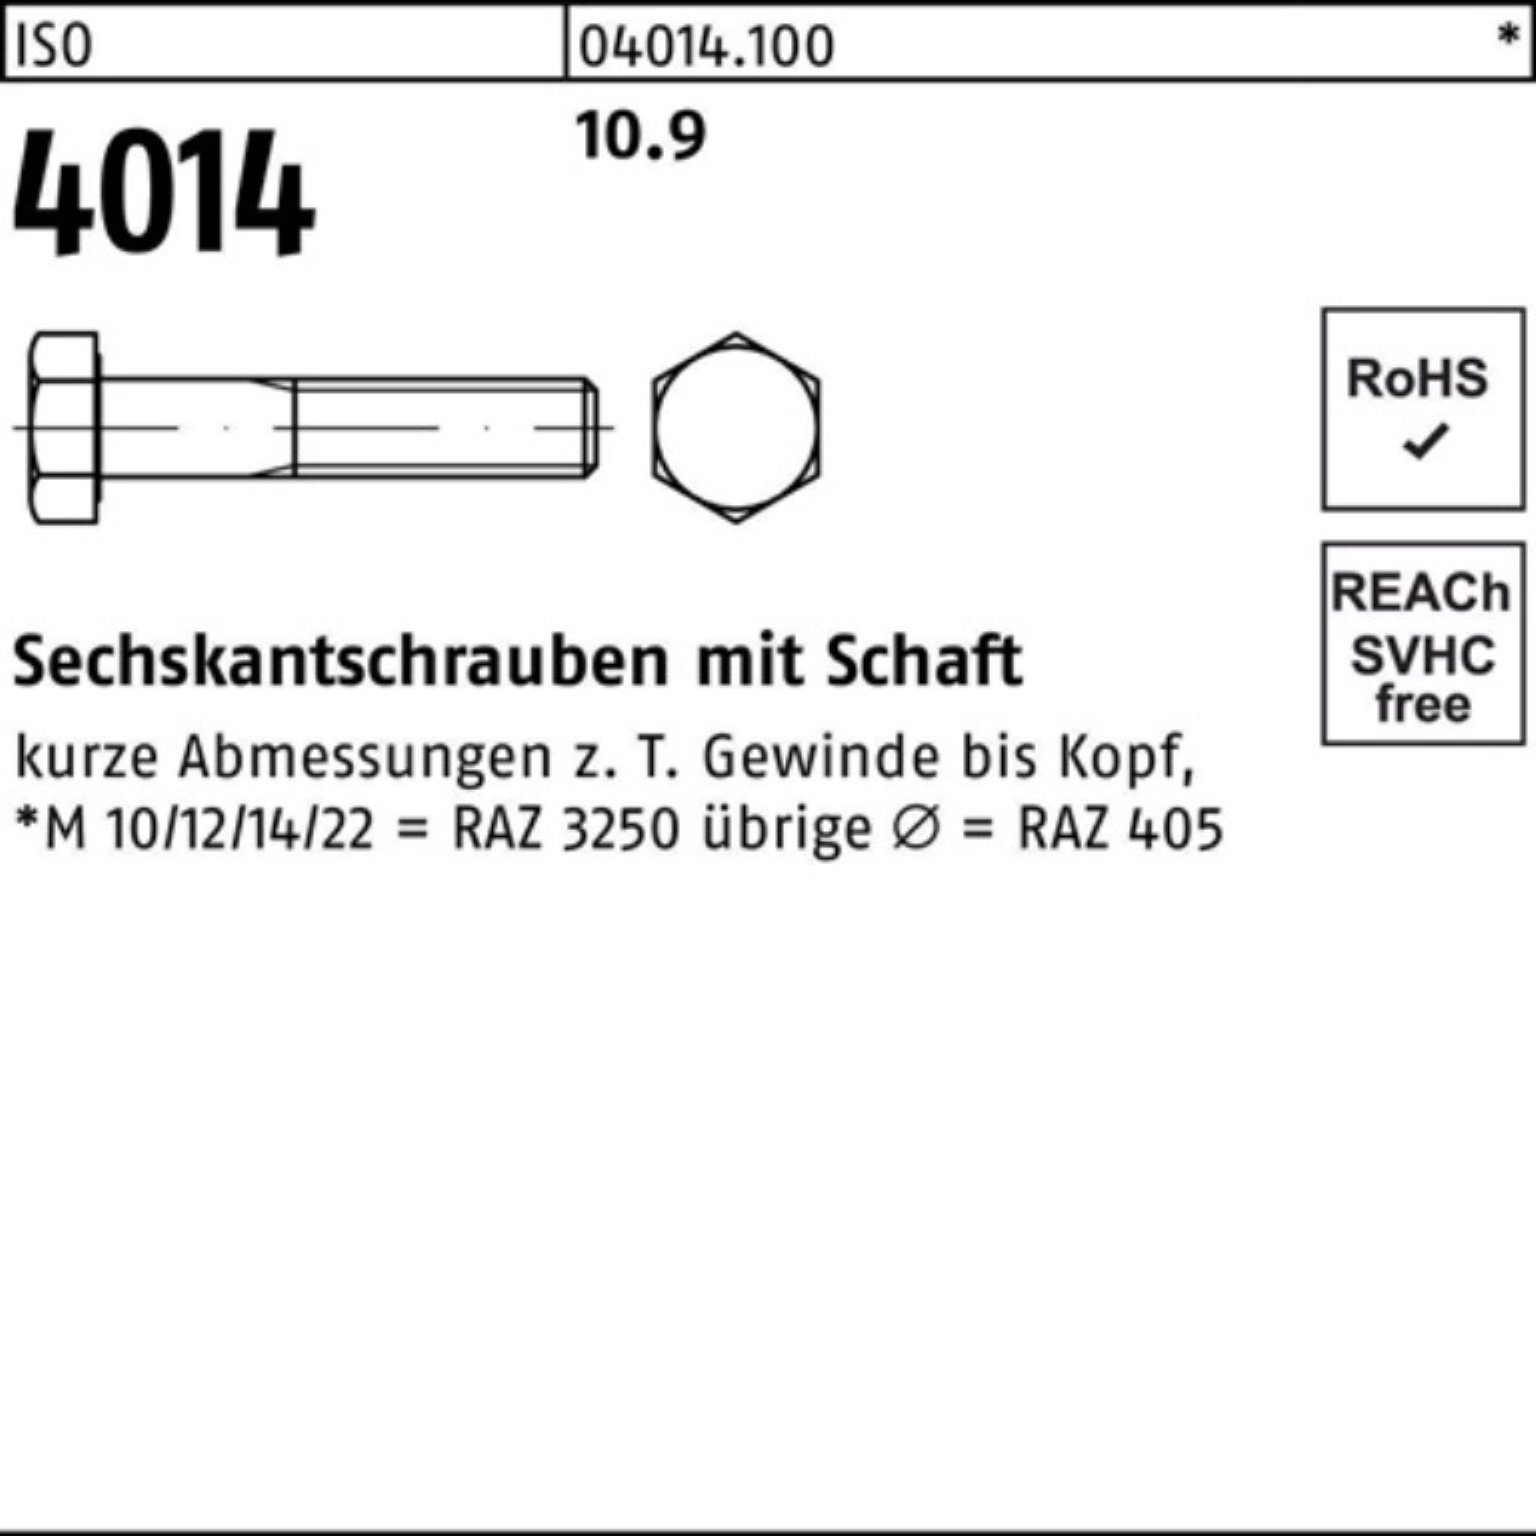 10.9 Bufab Sechskantschraube Schaft 1 M36x Sechskantschraube Pack Stück 120 100er 4014 IS ISO